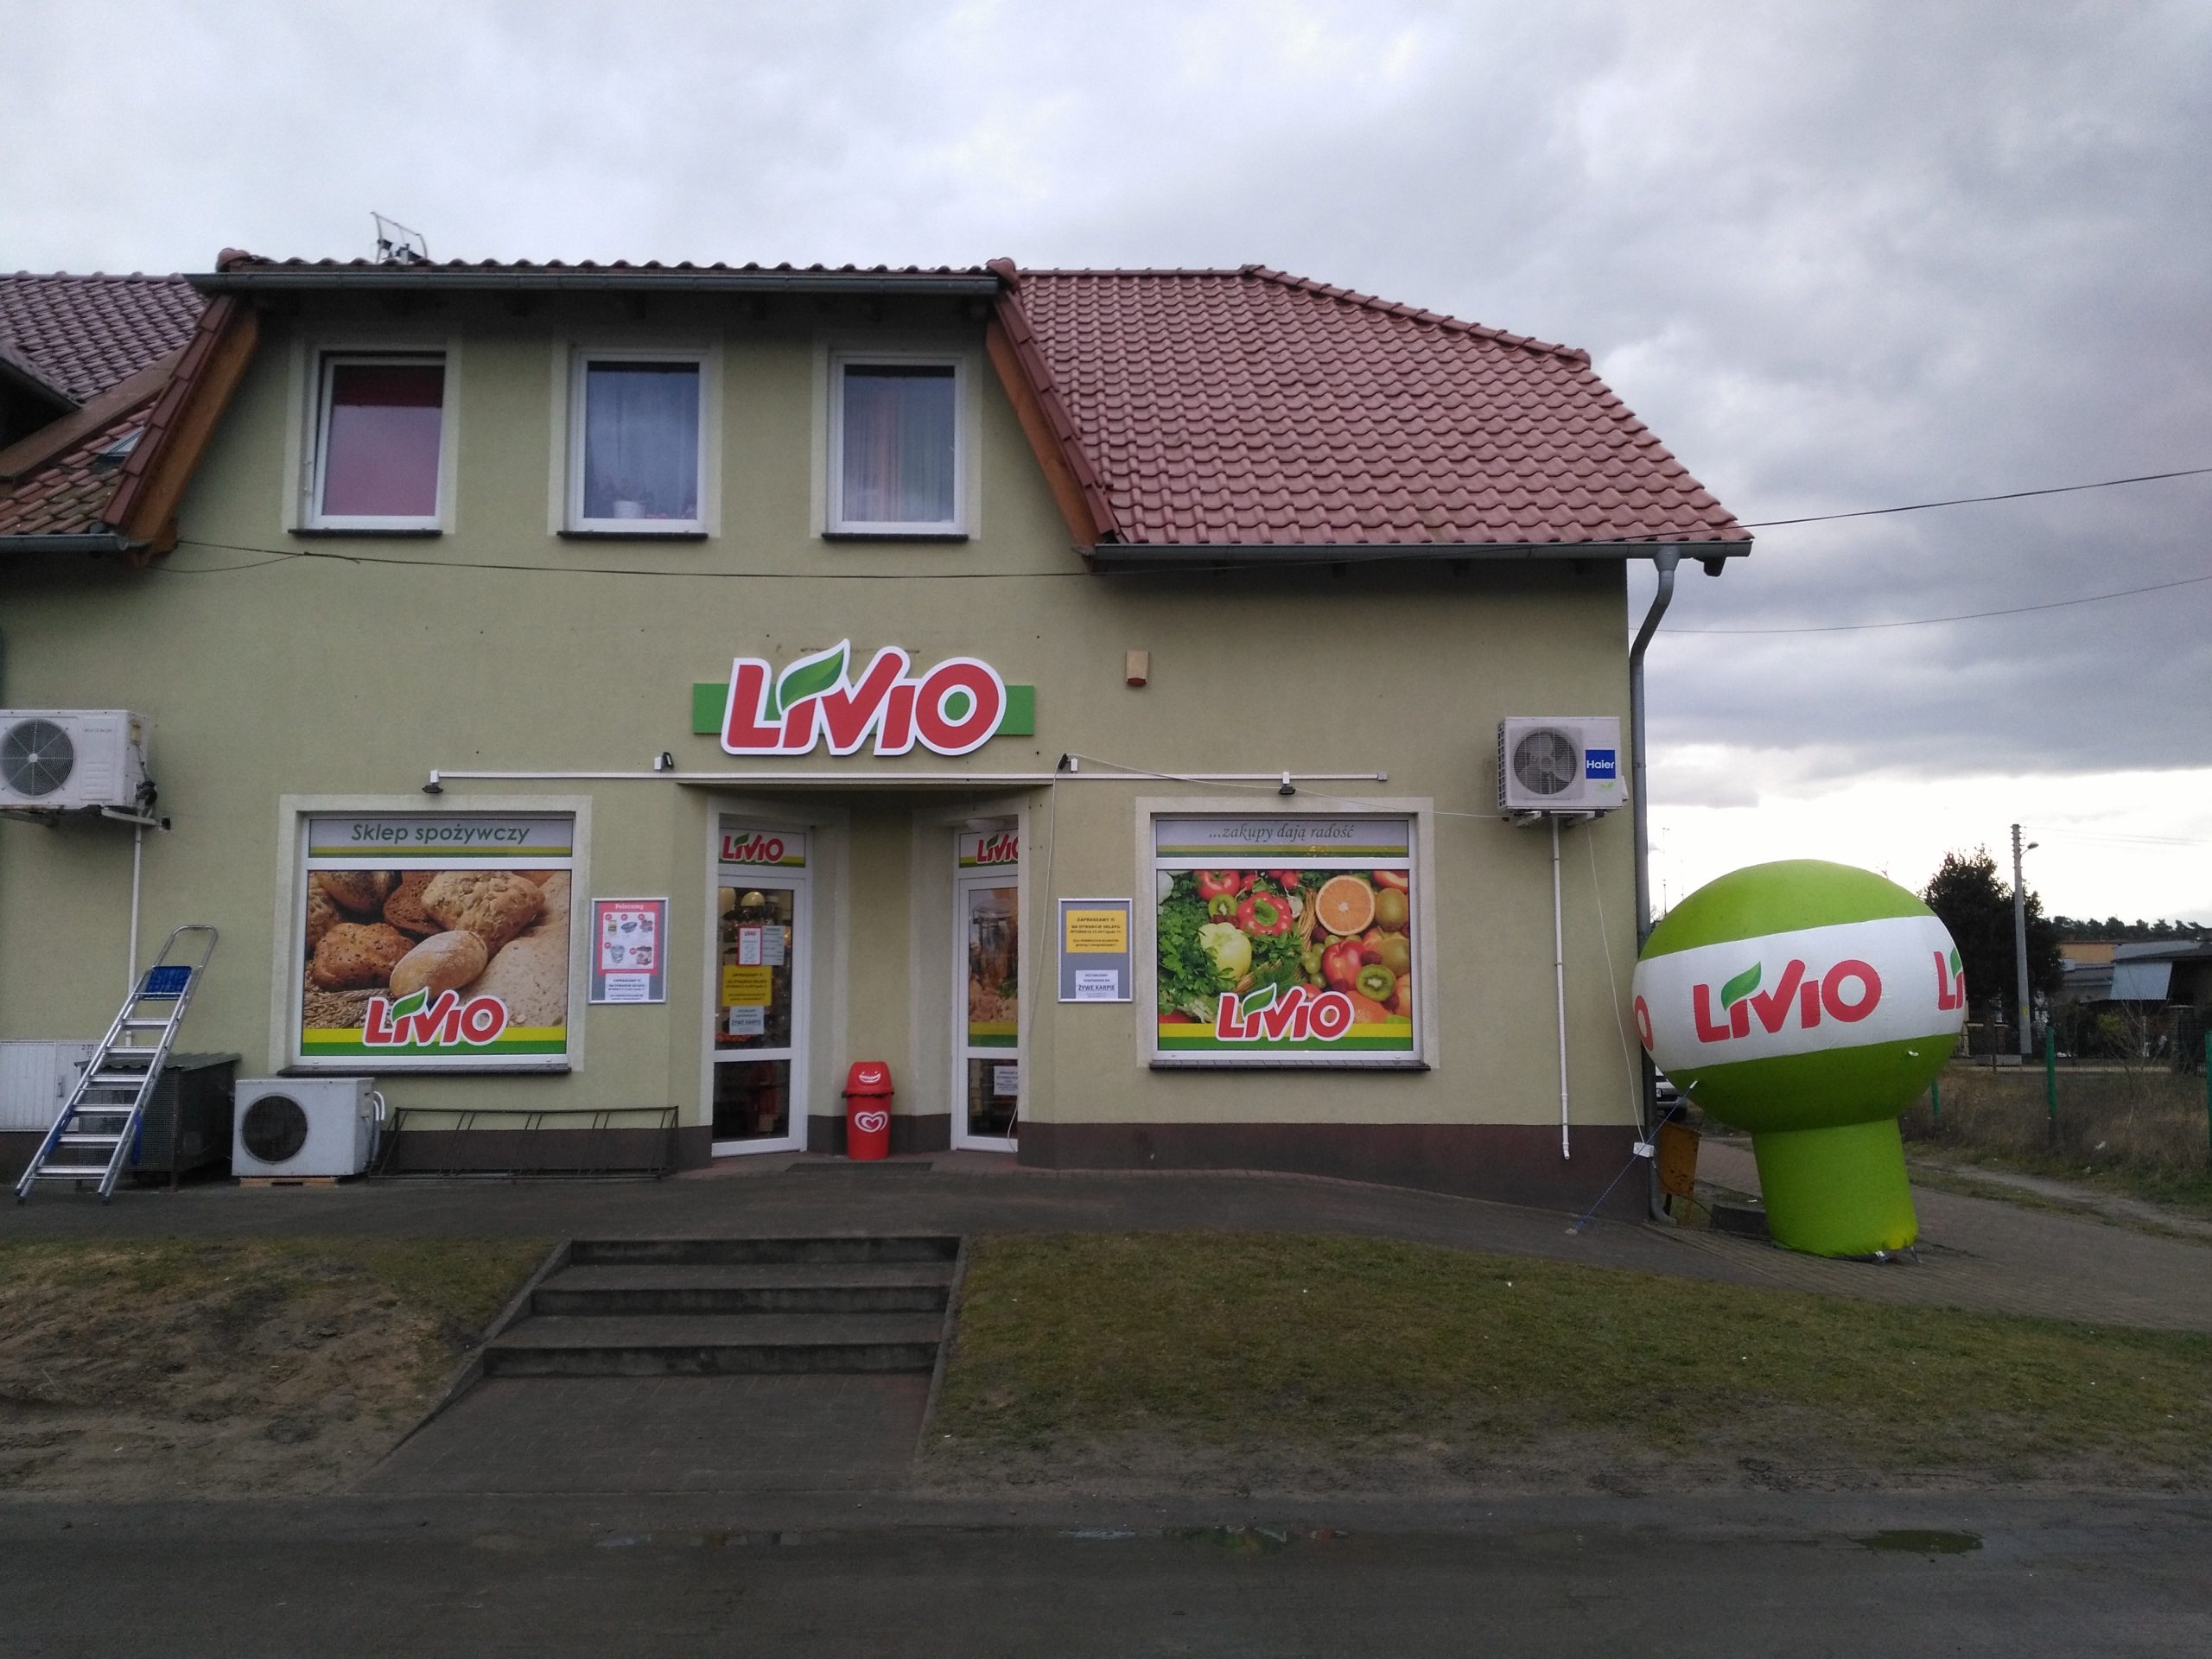 Ponad 500 sklepów w poznańskim oddziale Livio